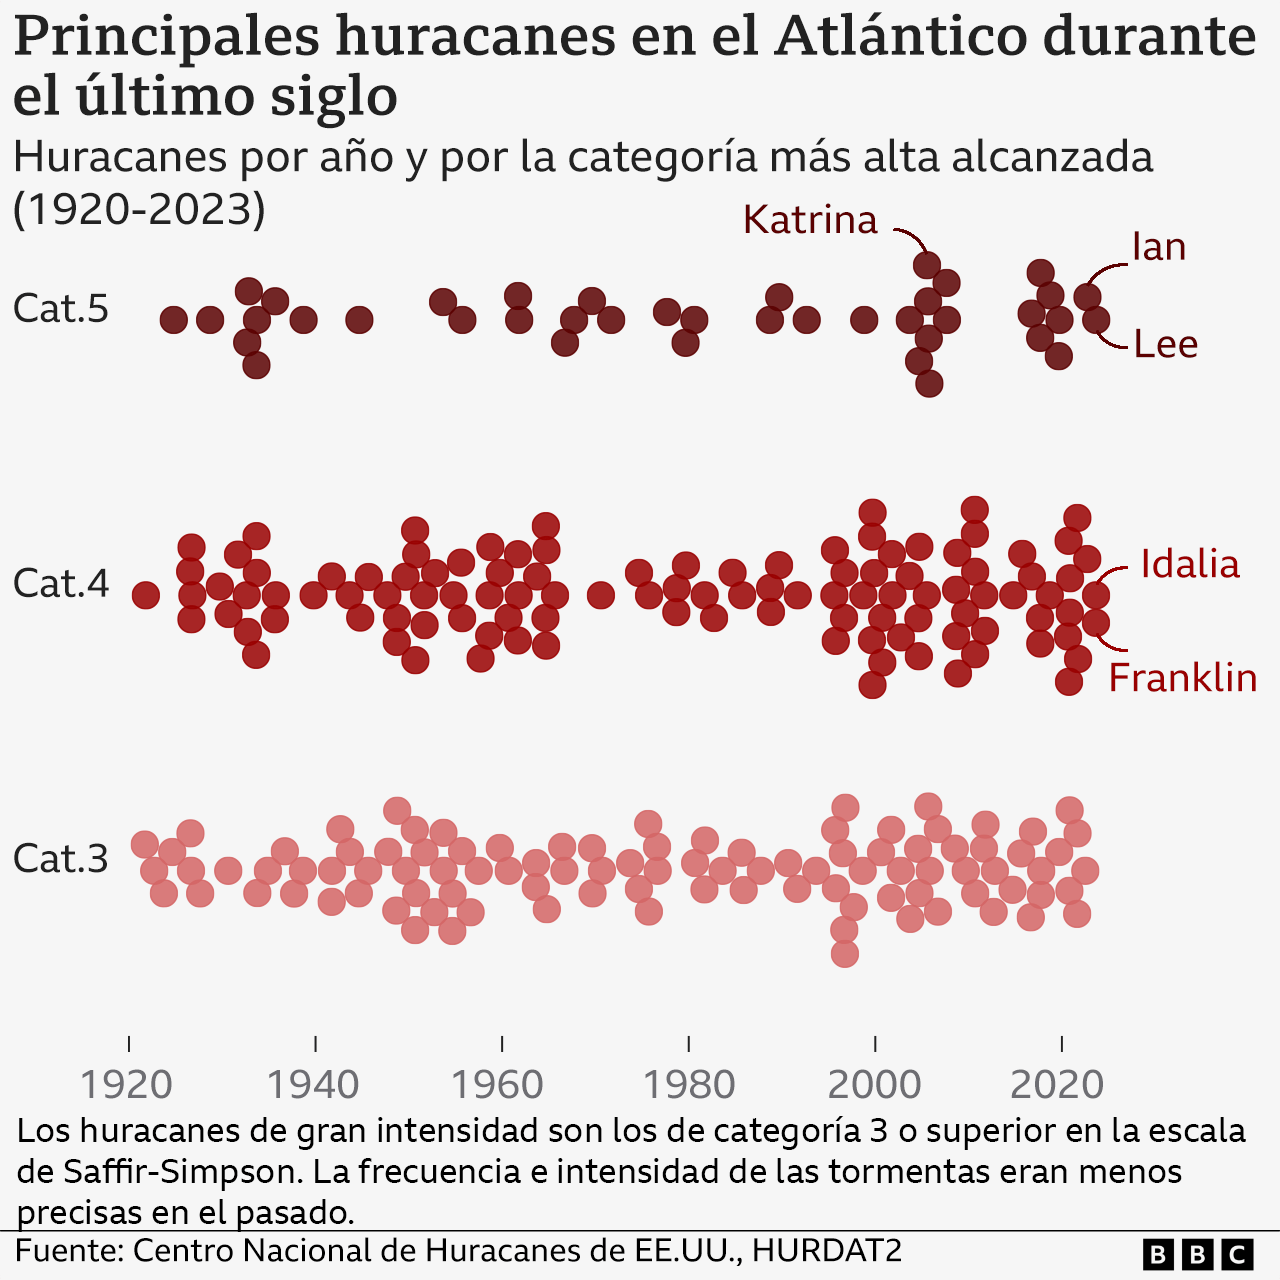 Gráfico que explica cuáles han sido los principales huracanes en el Atlántico durante el último siglo.